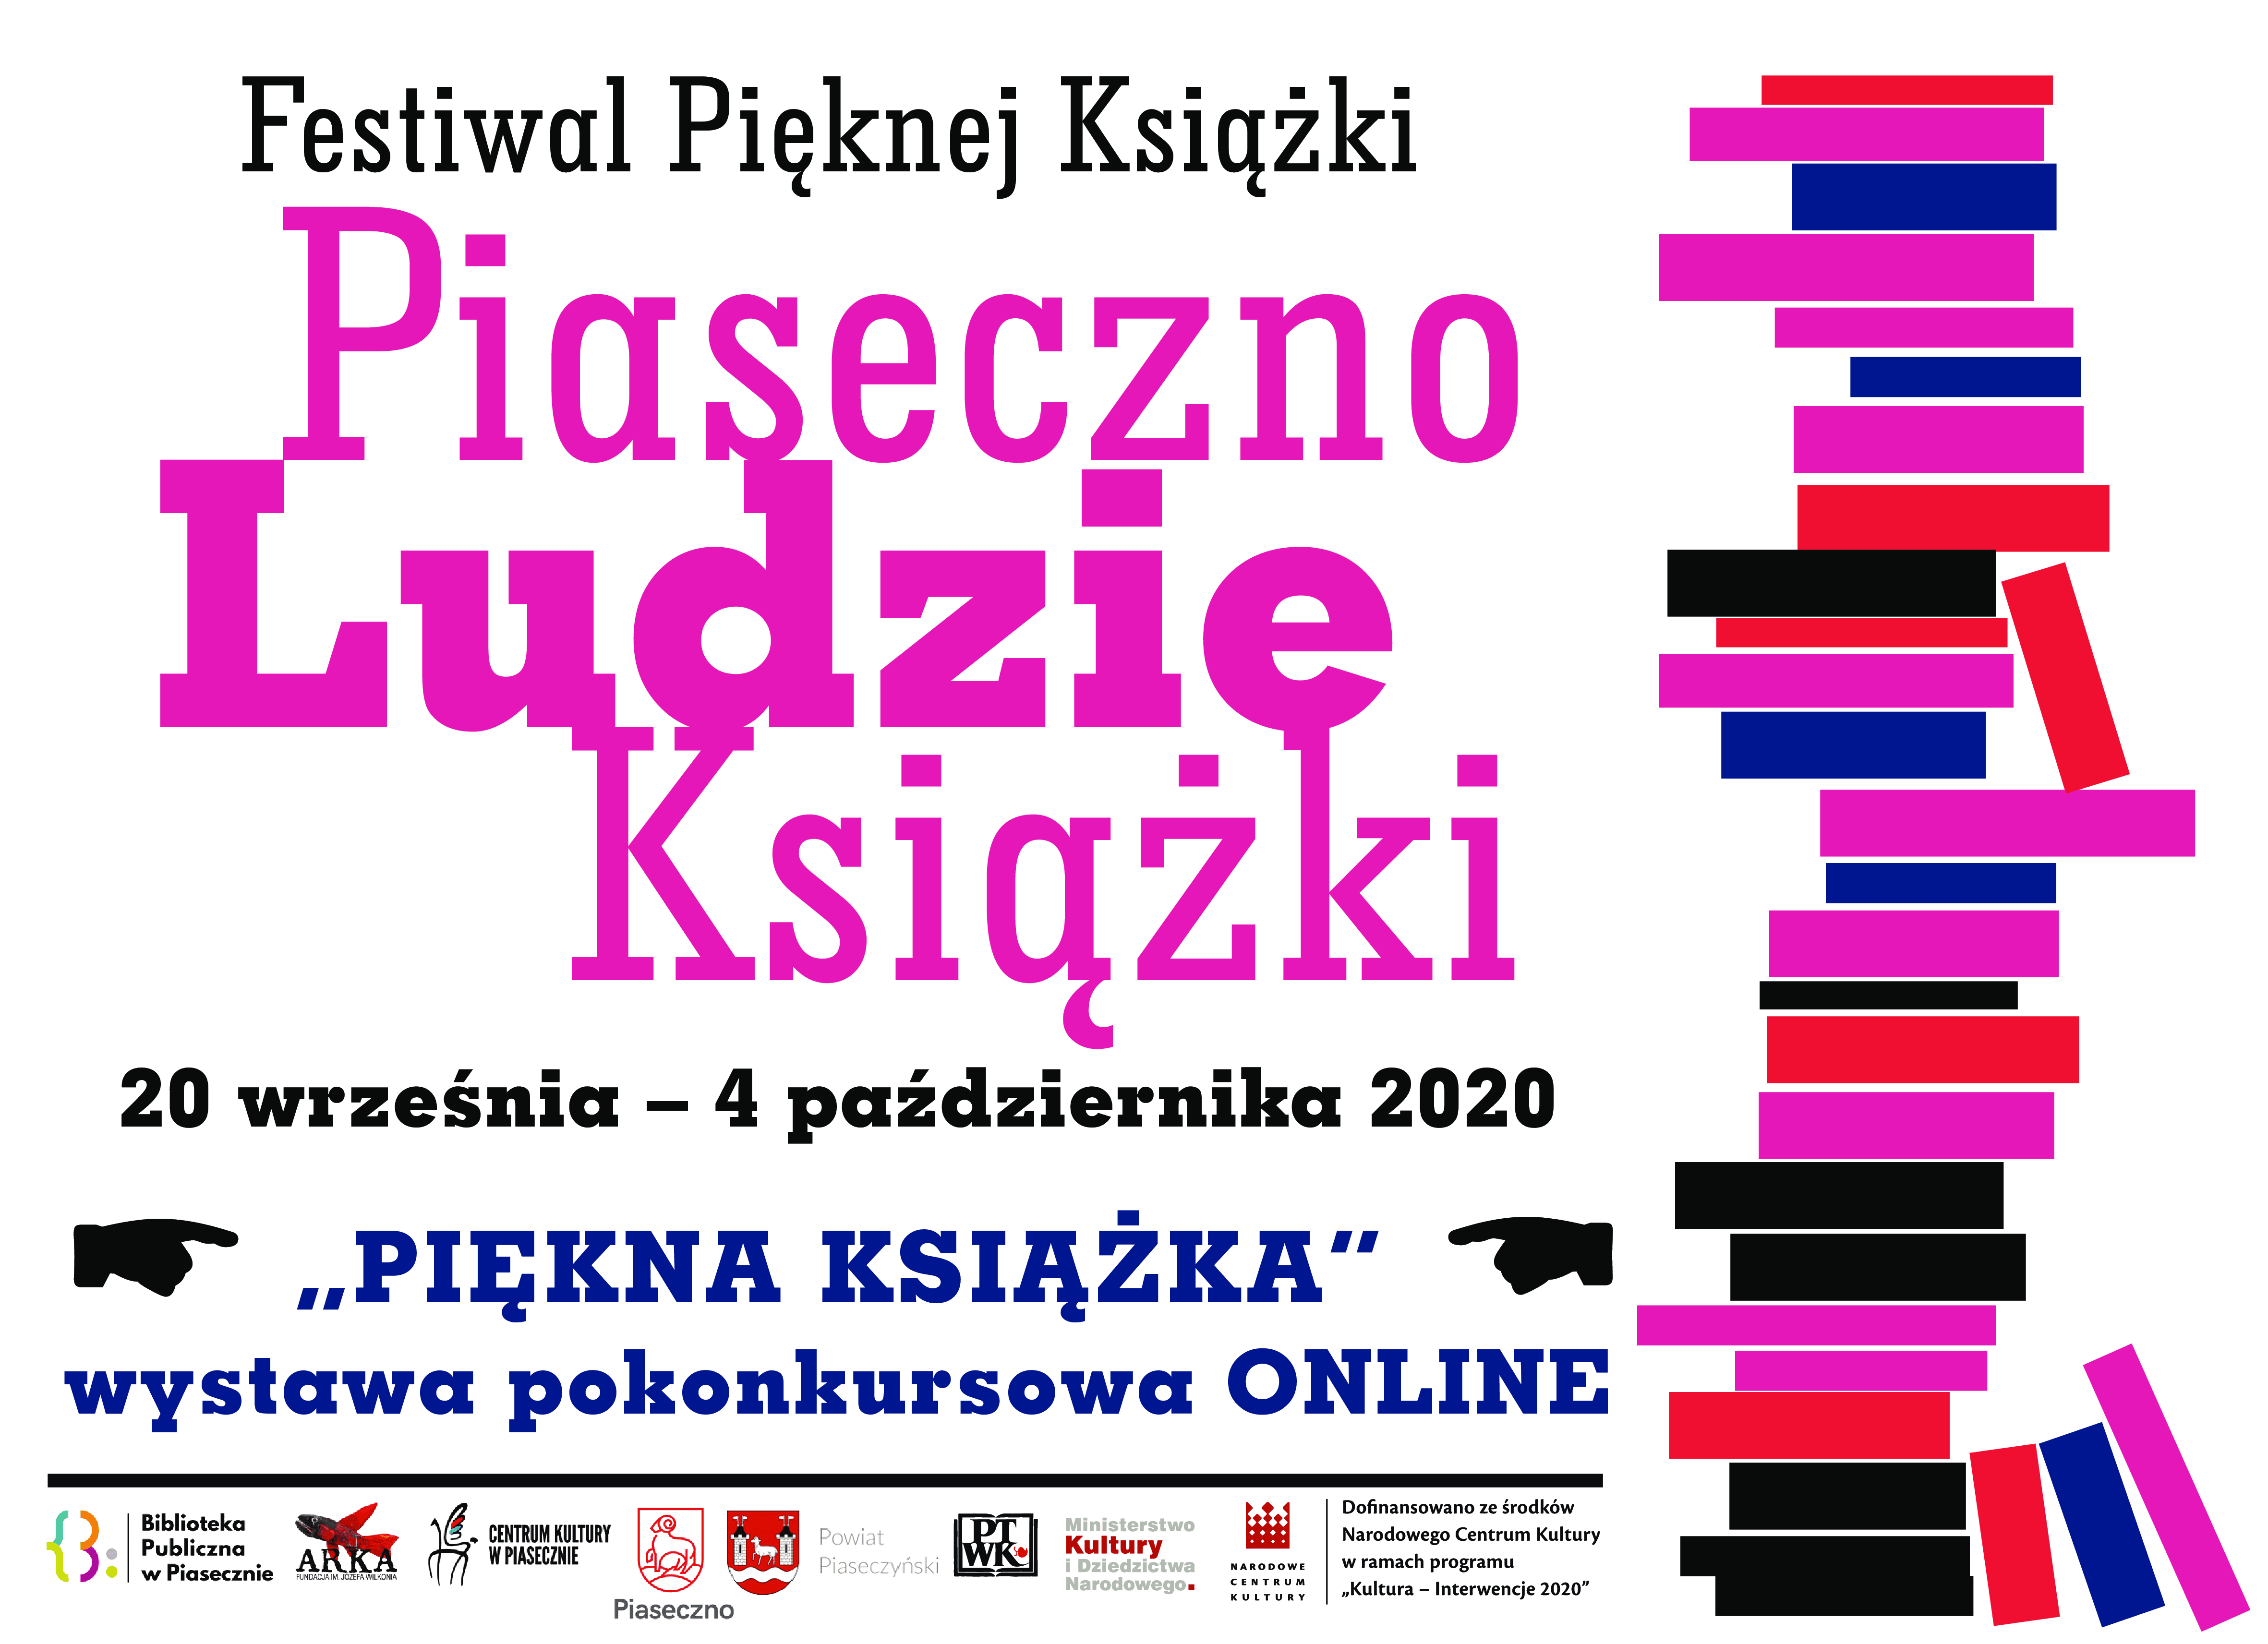 Plakat promujący Festiwal Pięknej Książki